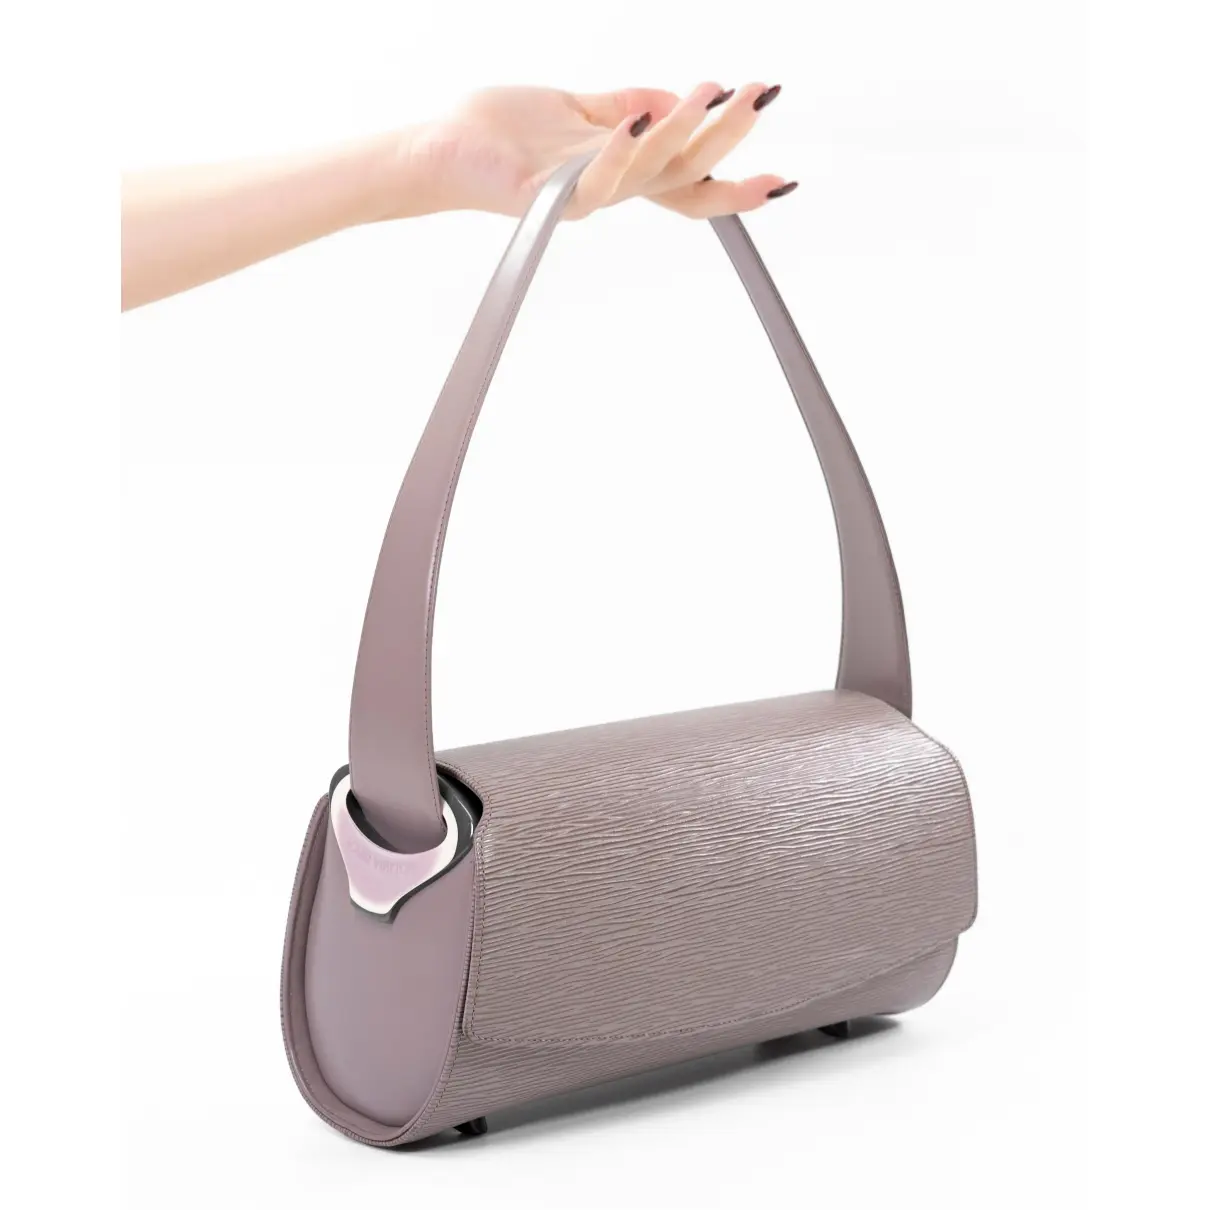 Nocturne leather handbag Louis Vuitton